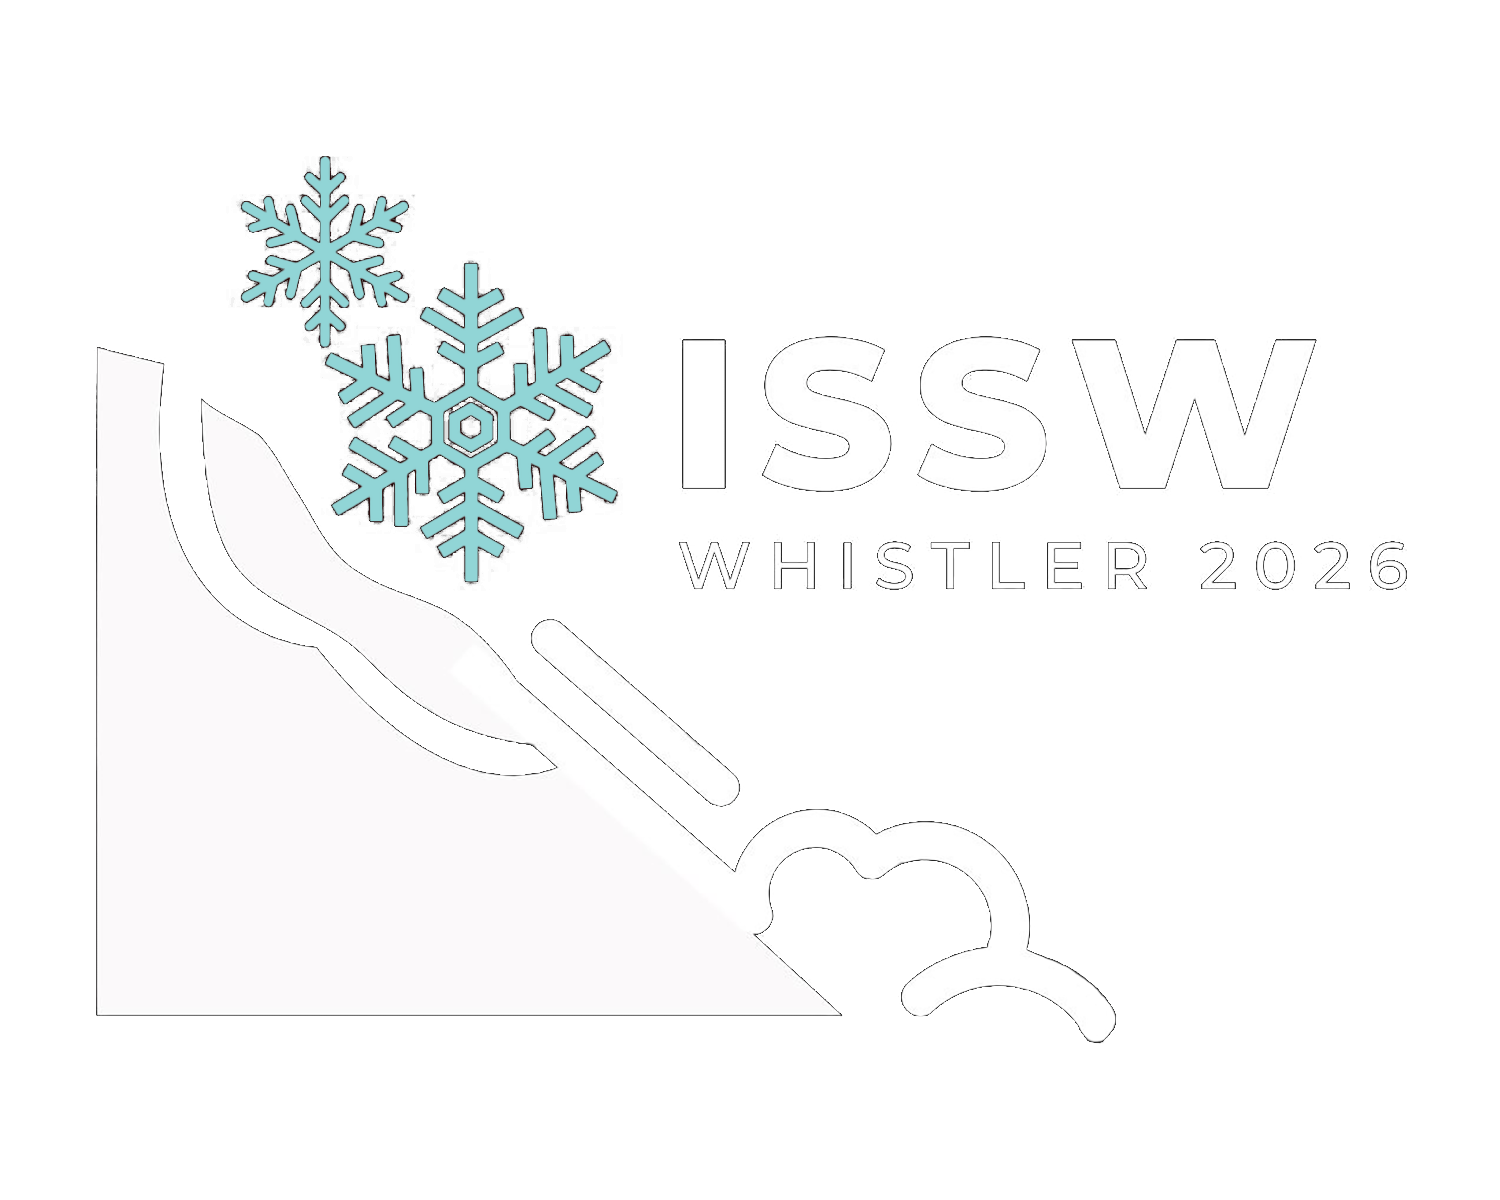 www.issw2026.com